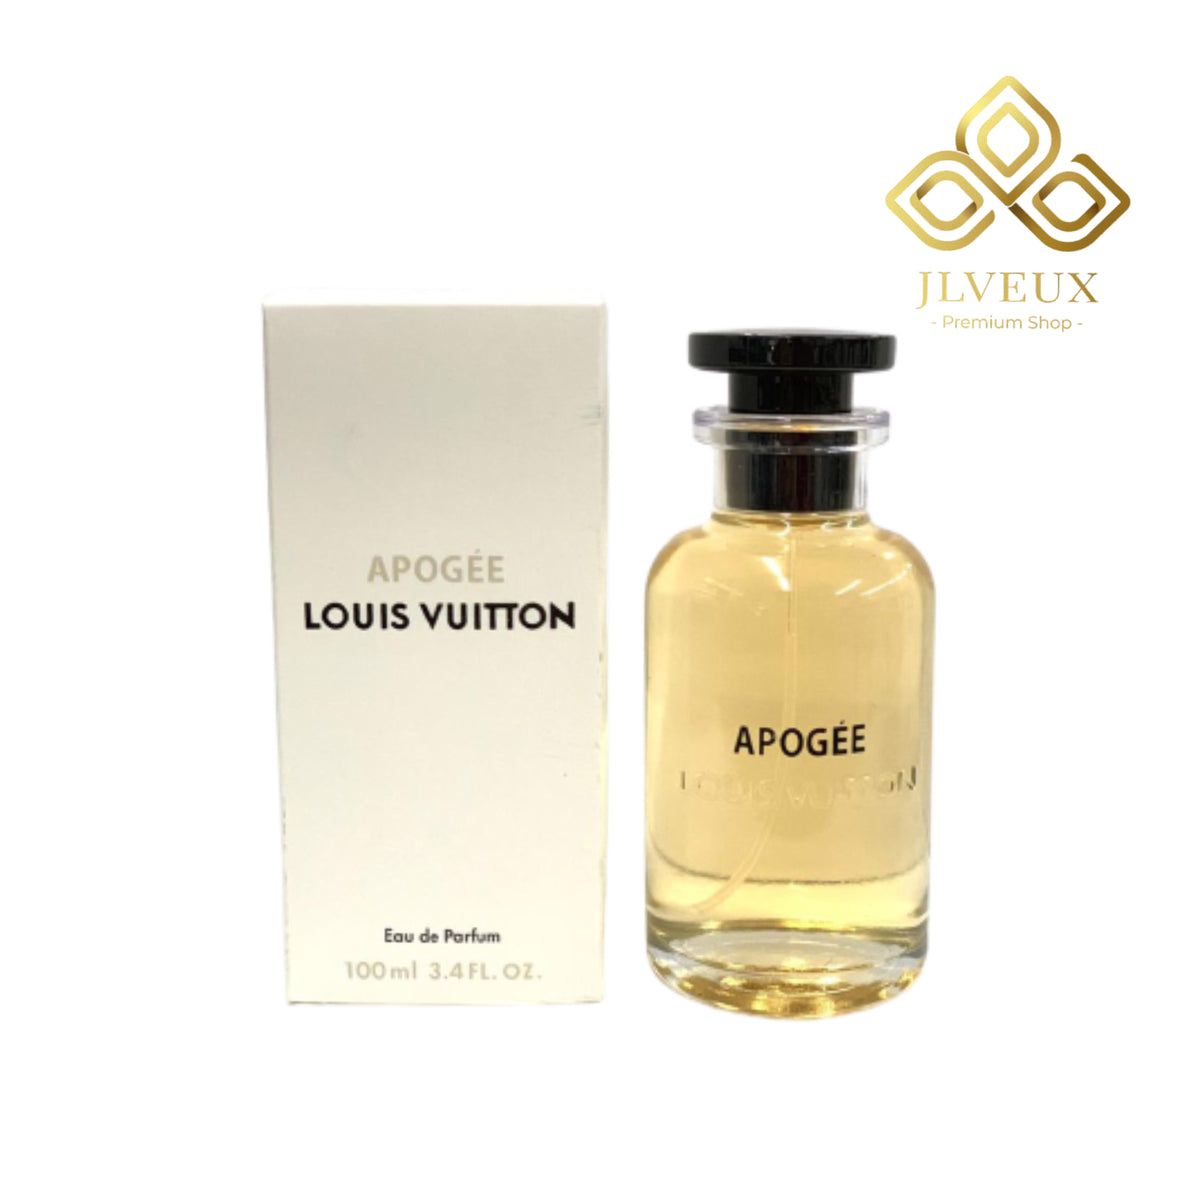 Apogée Louis Vuitton– Jlveux